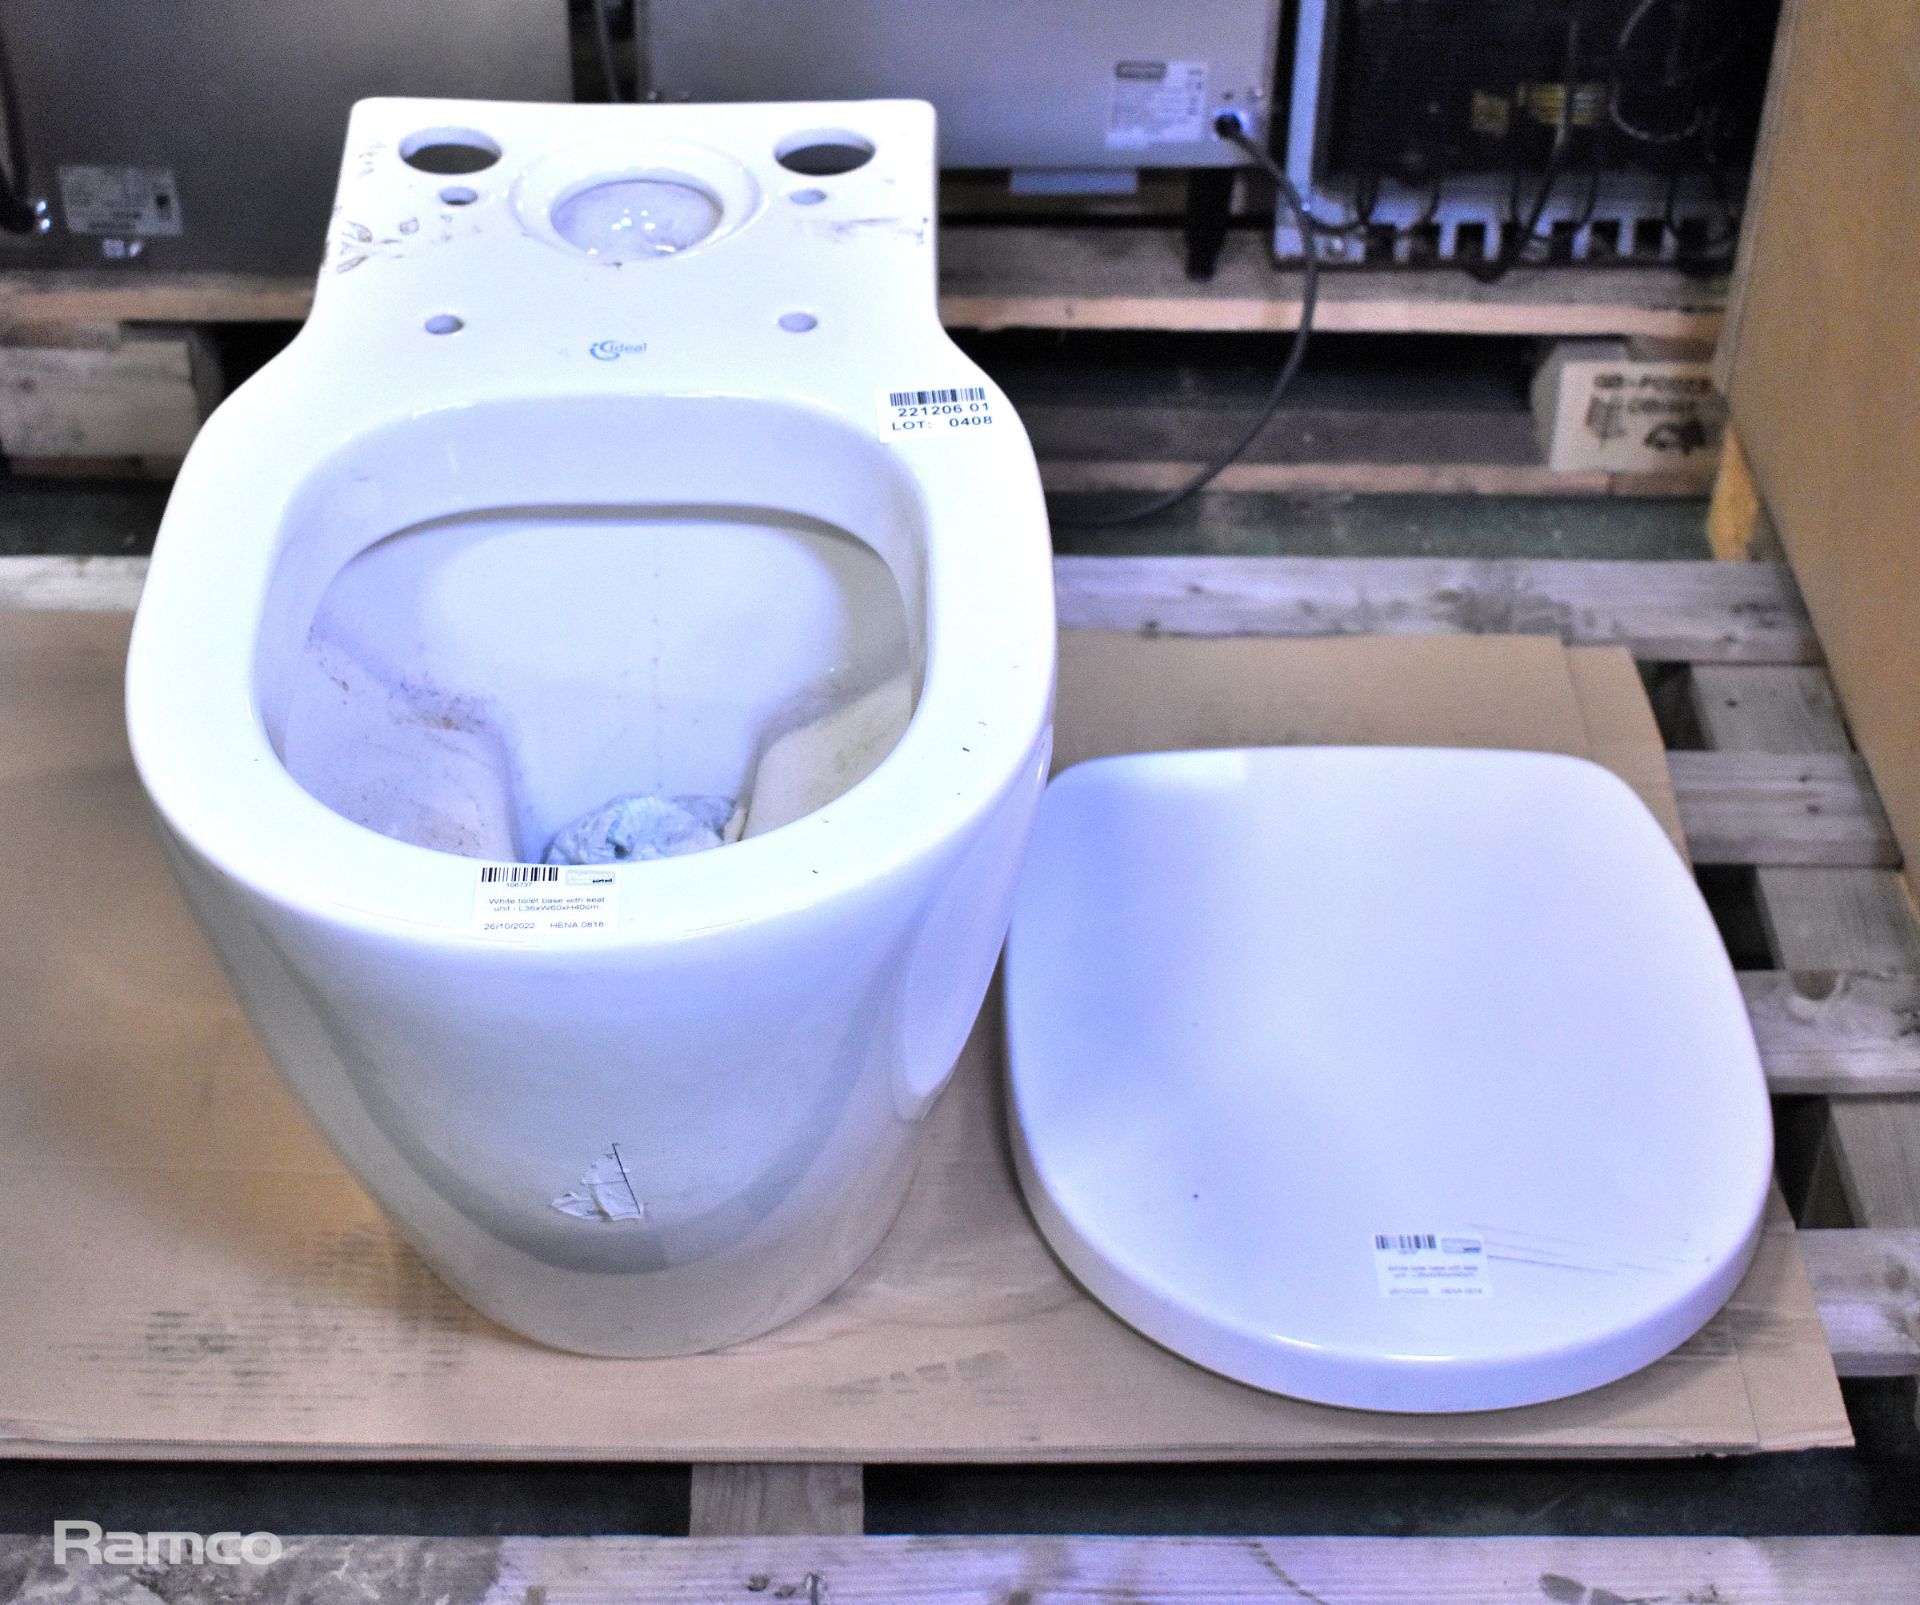 White toilet with seat unit - L36xW60xH40cm